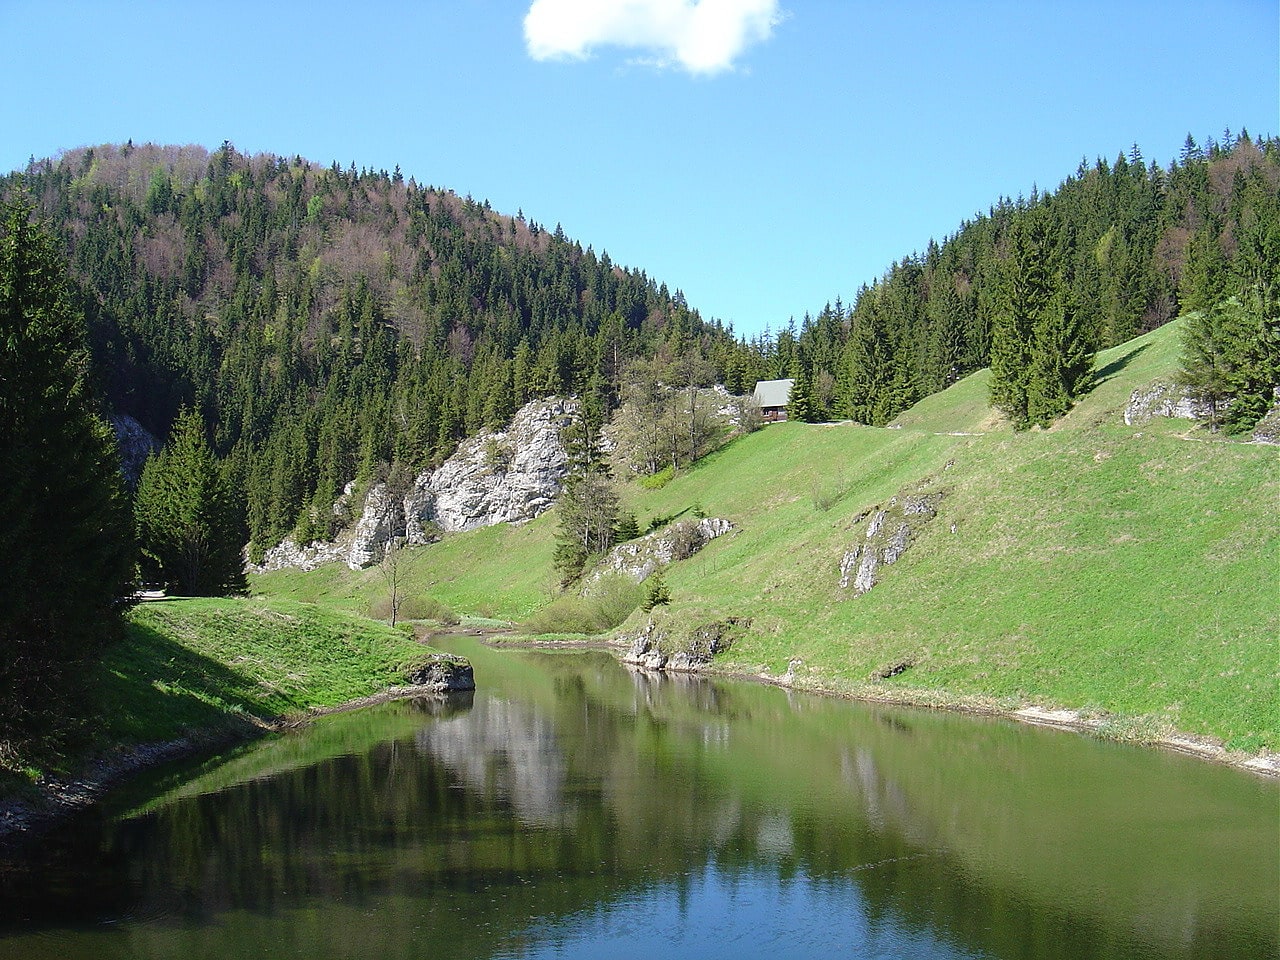 Park Narodowy Słowacki Raj, Słowacja